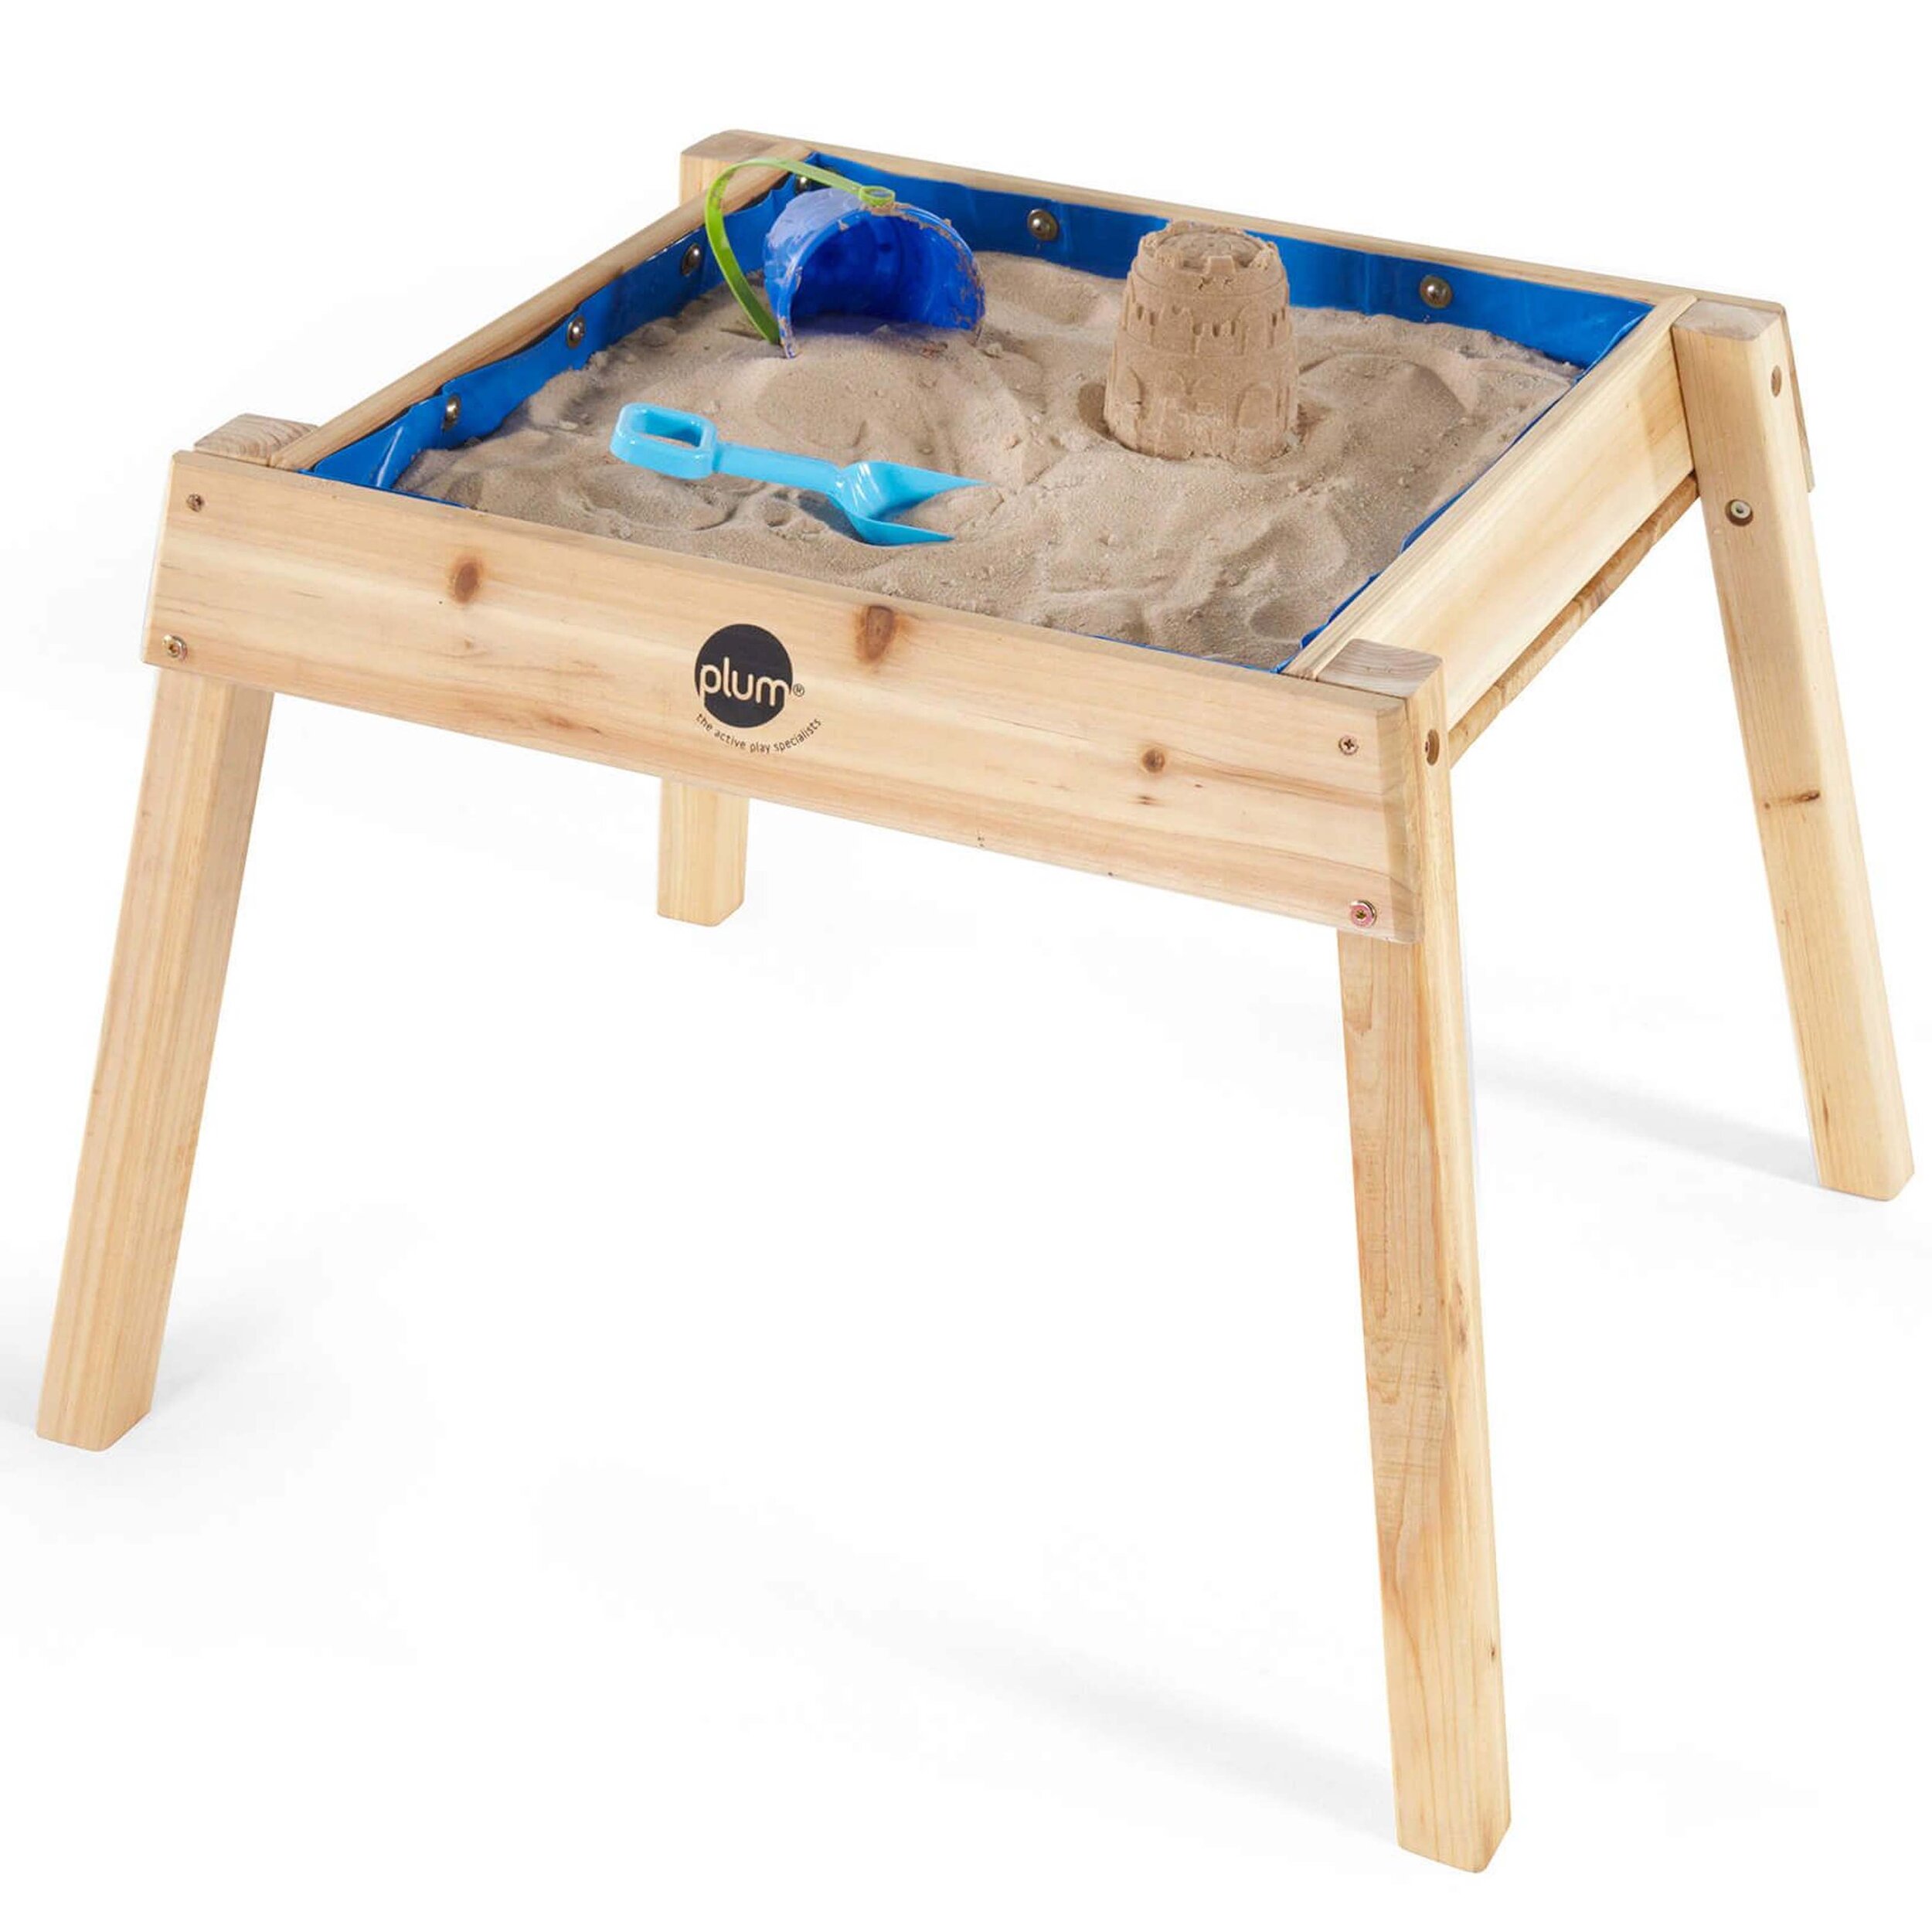 plum-tavolino-25071-legno-sabbia-acqua-giochi-esterno-babylove2000-prodotto-sabbia.jpg